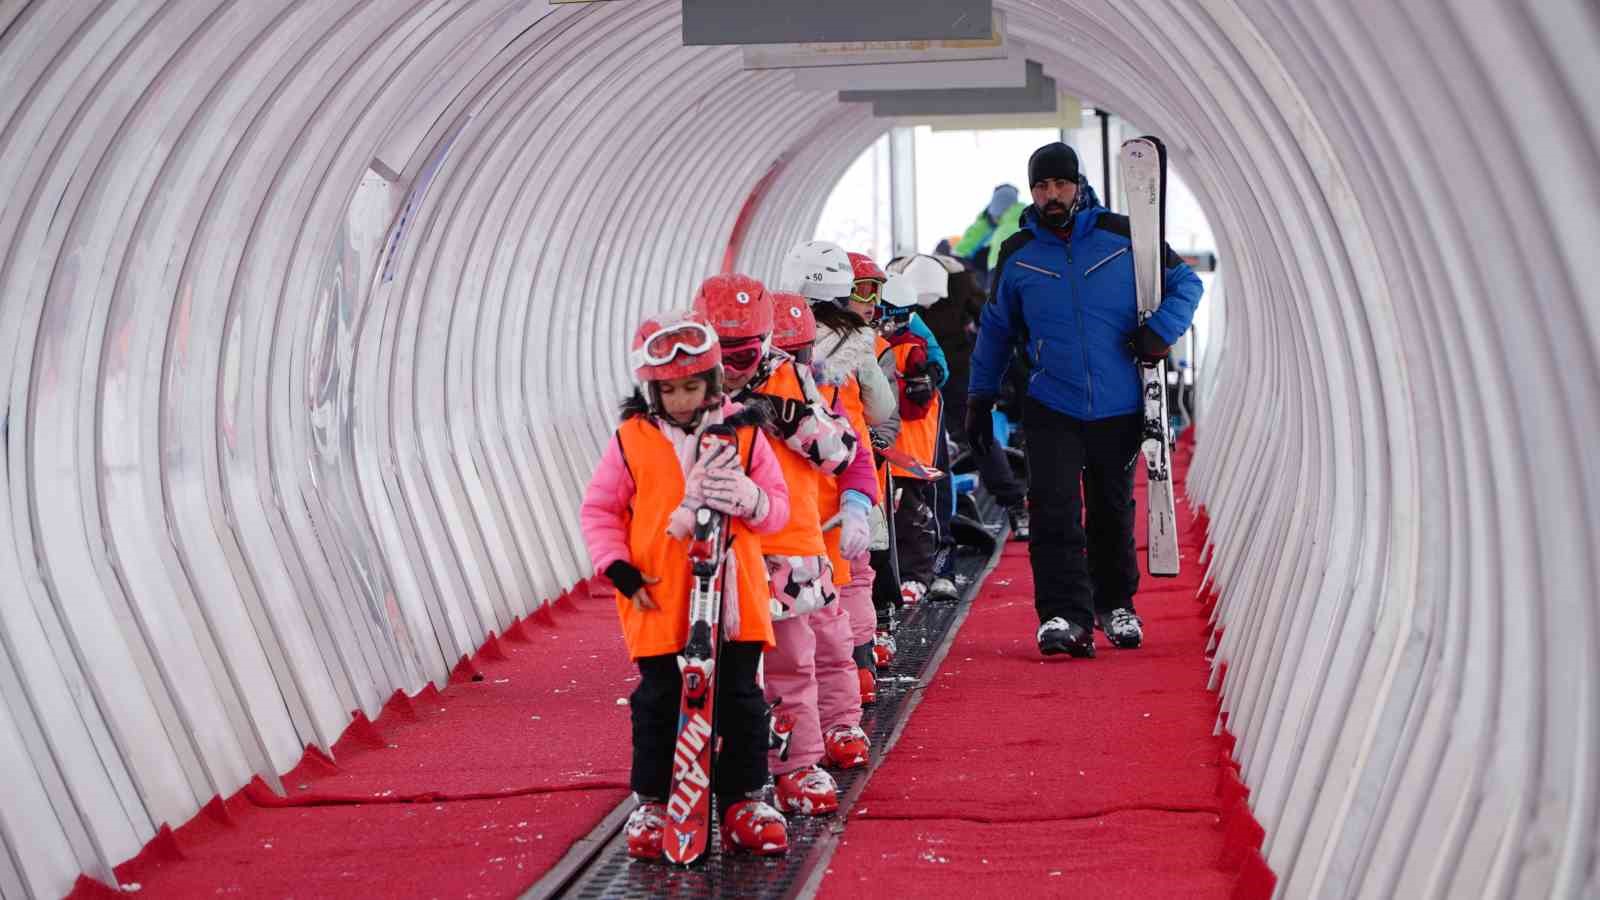 Erciyes Kayak Okulu’nda 200 kişi ilk defa kayak öğreniyor